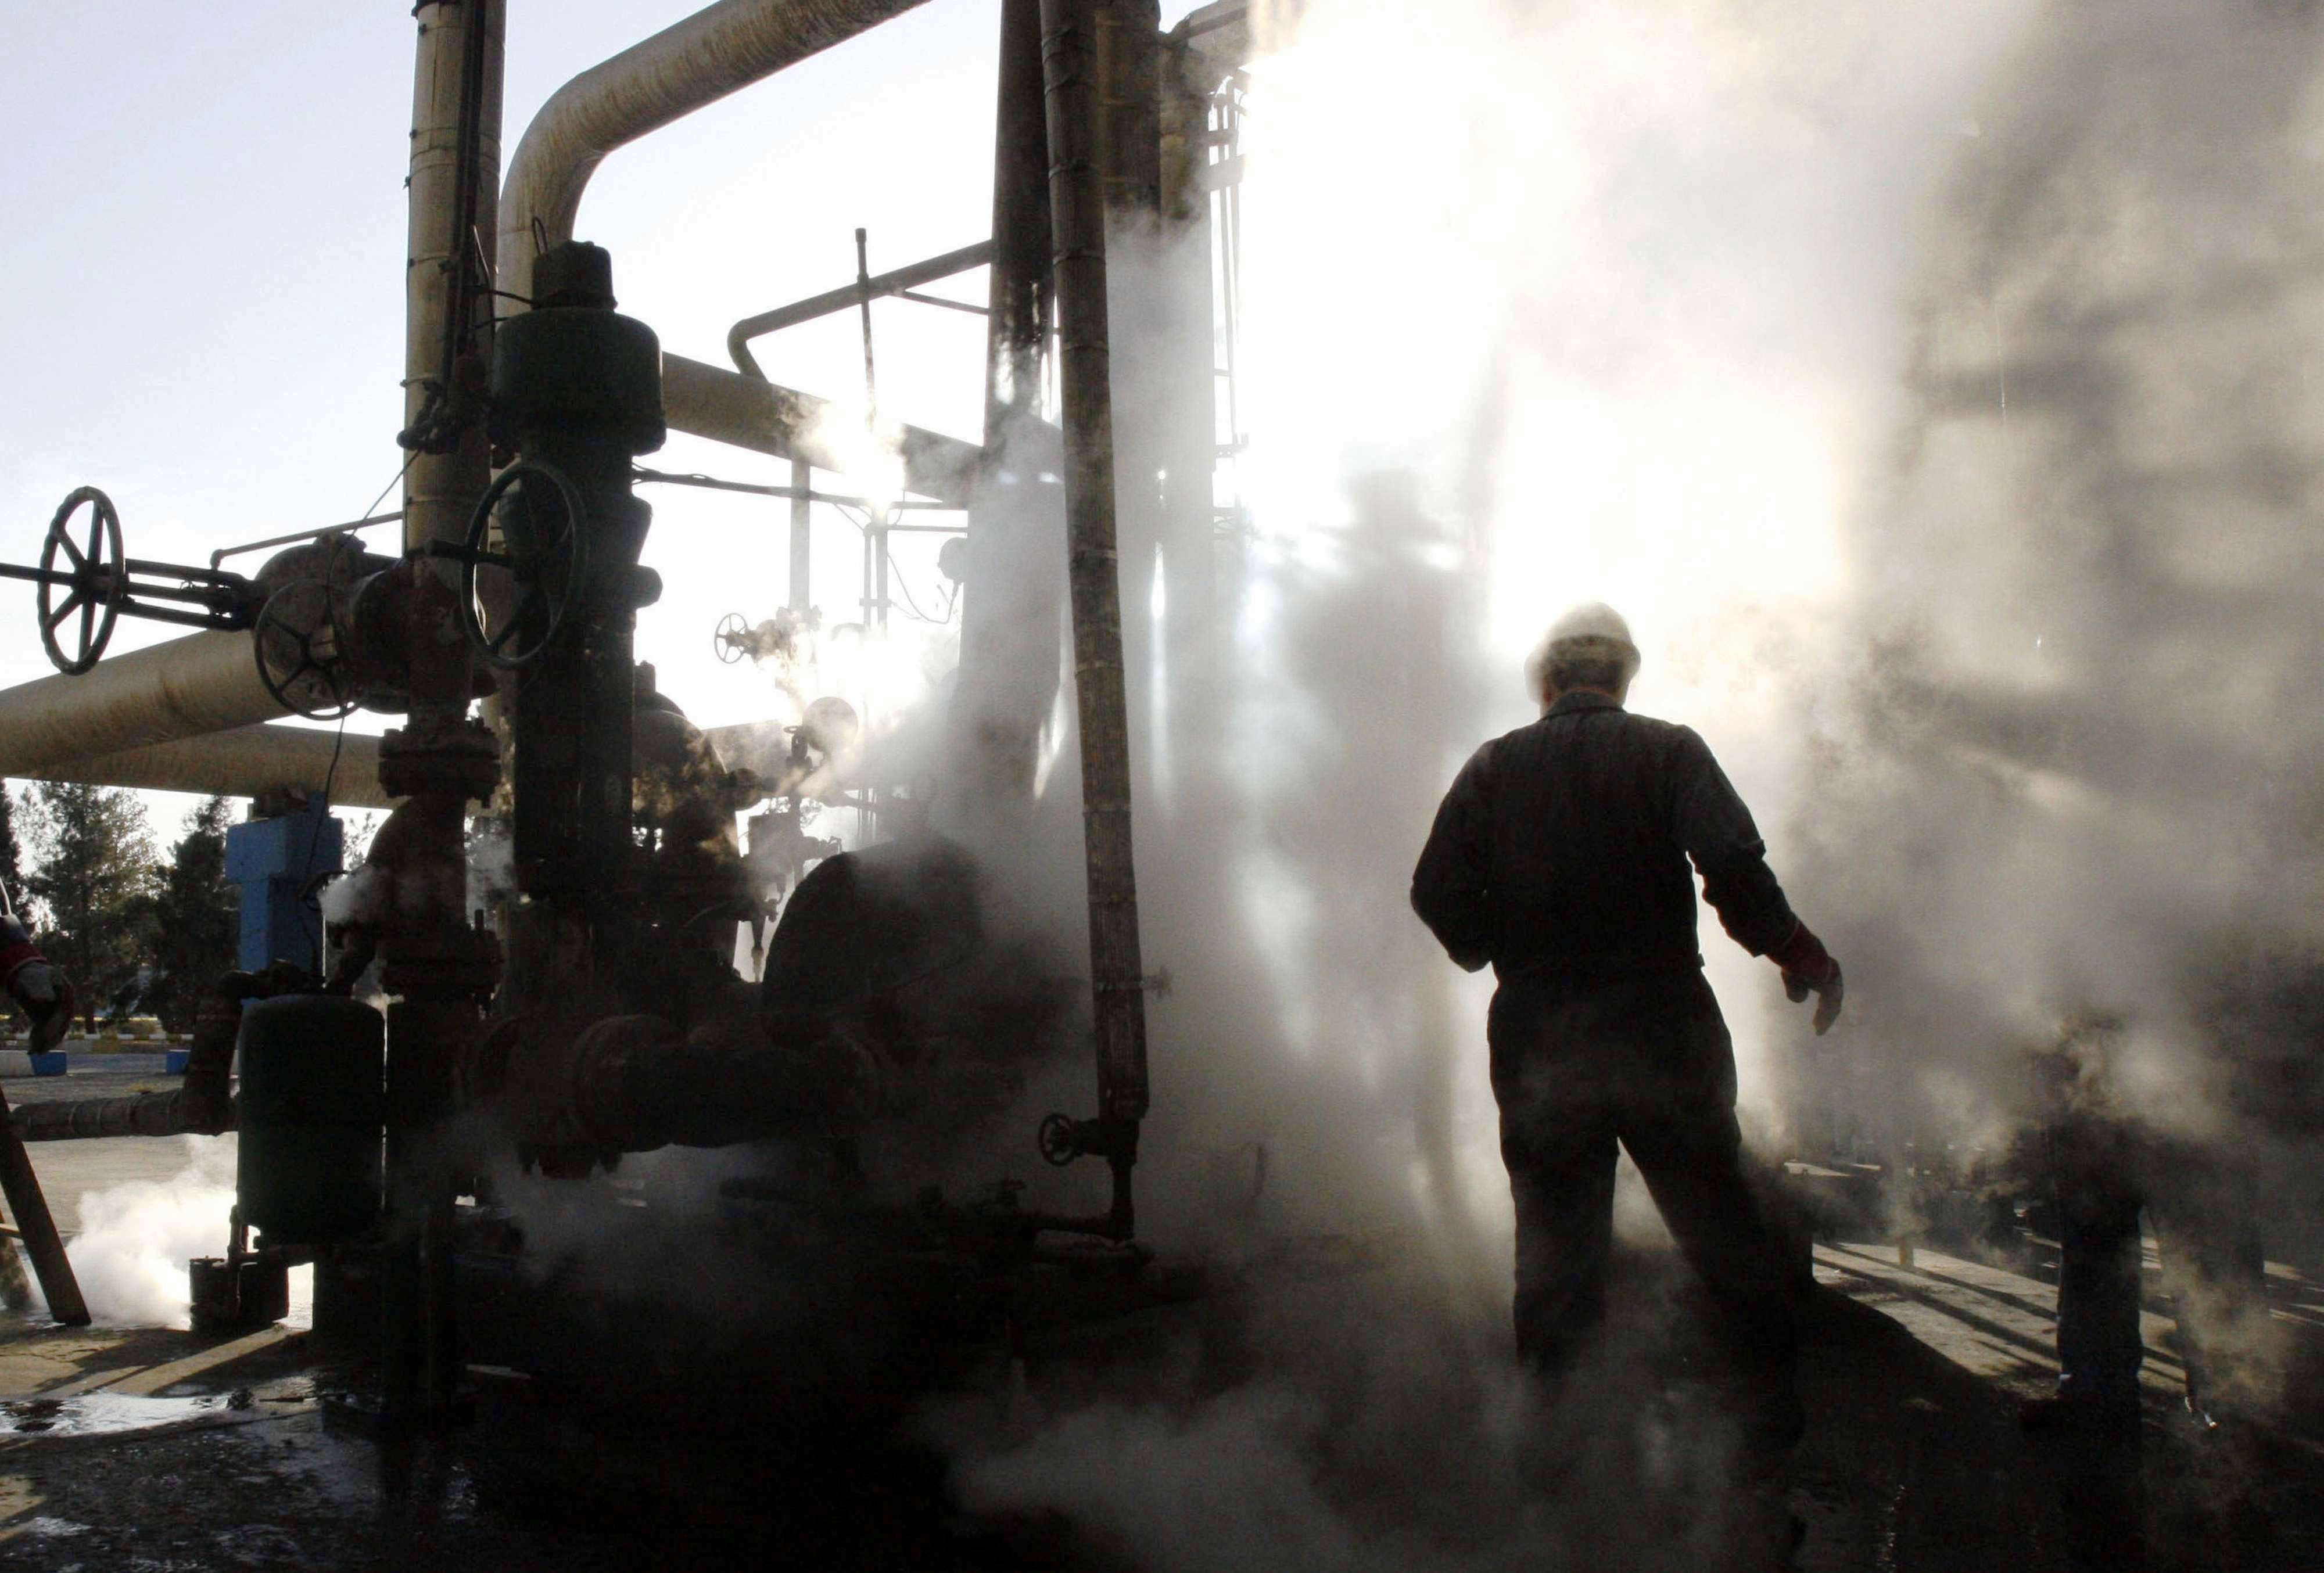 العرض الإيراني يأتي بينما تضغط الولايات المتحدة على حلفائها الخليجيين لزيادة إنتاج النفط 